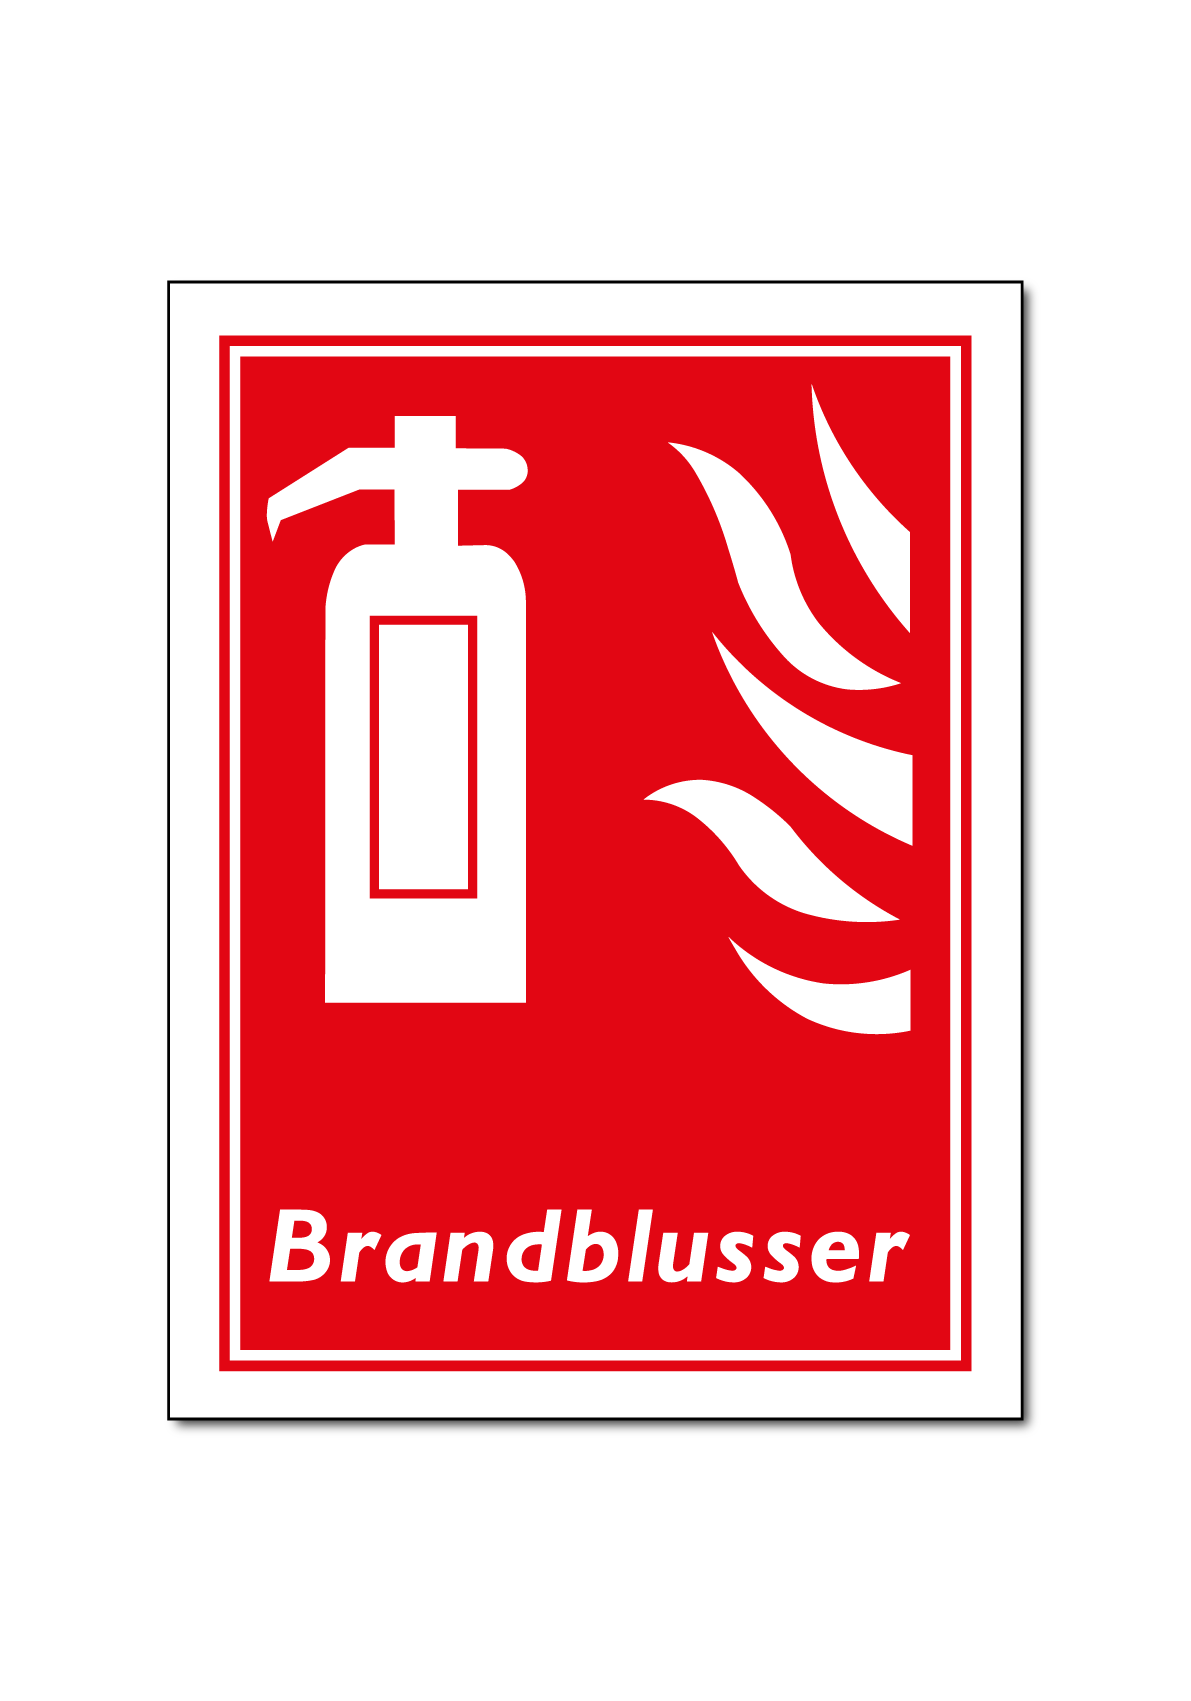 Brandblusser ook nalichtend (DBR23)